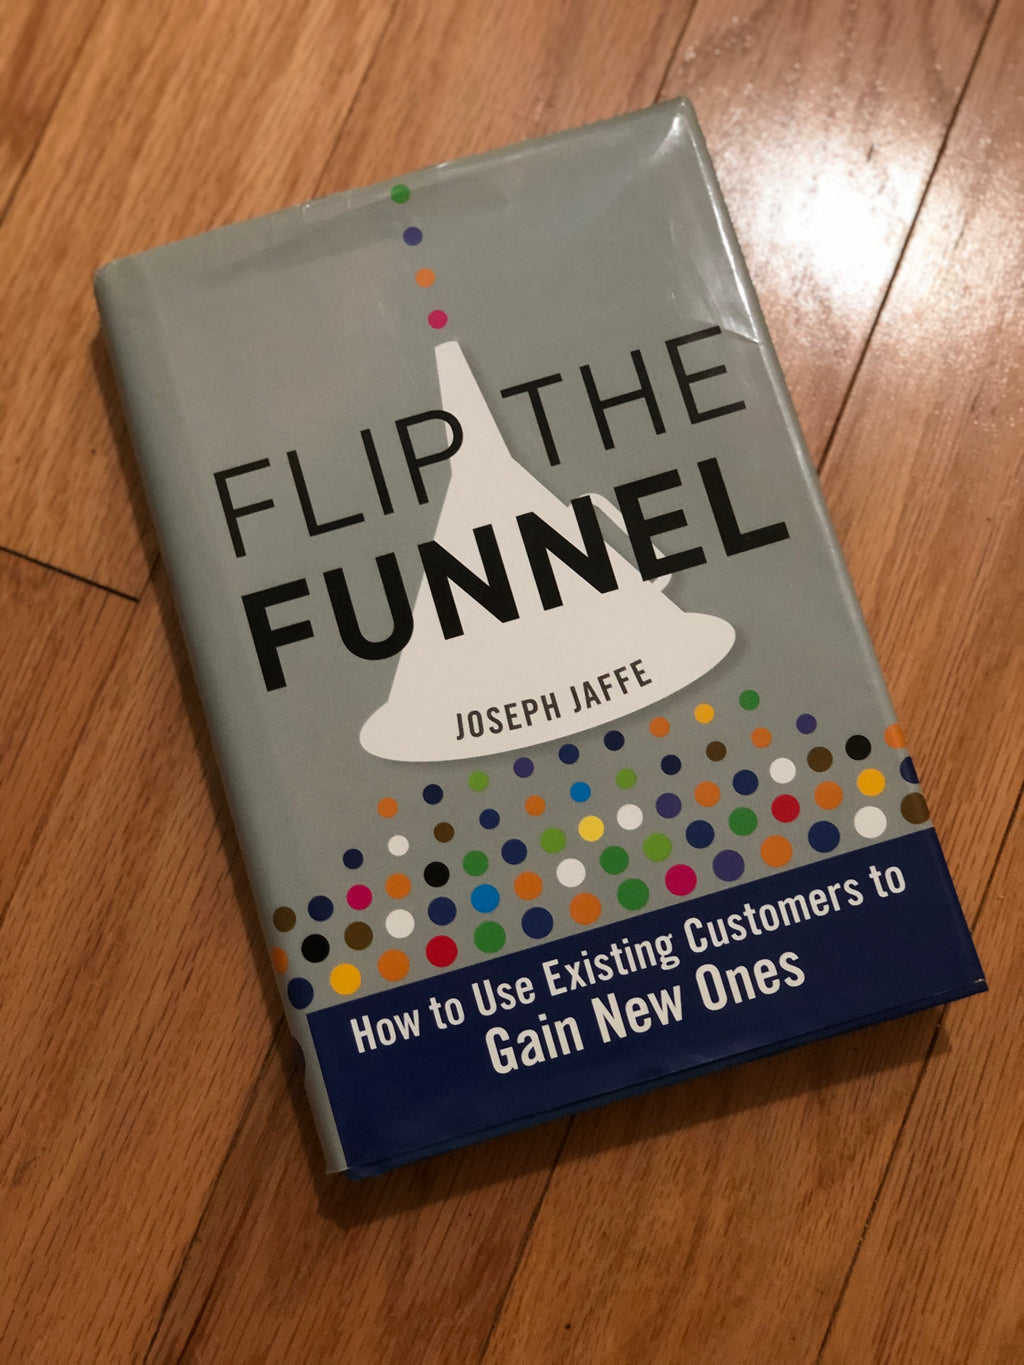 Flip the Funnel- by Joseph Jaffe